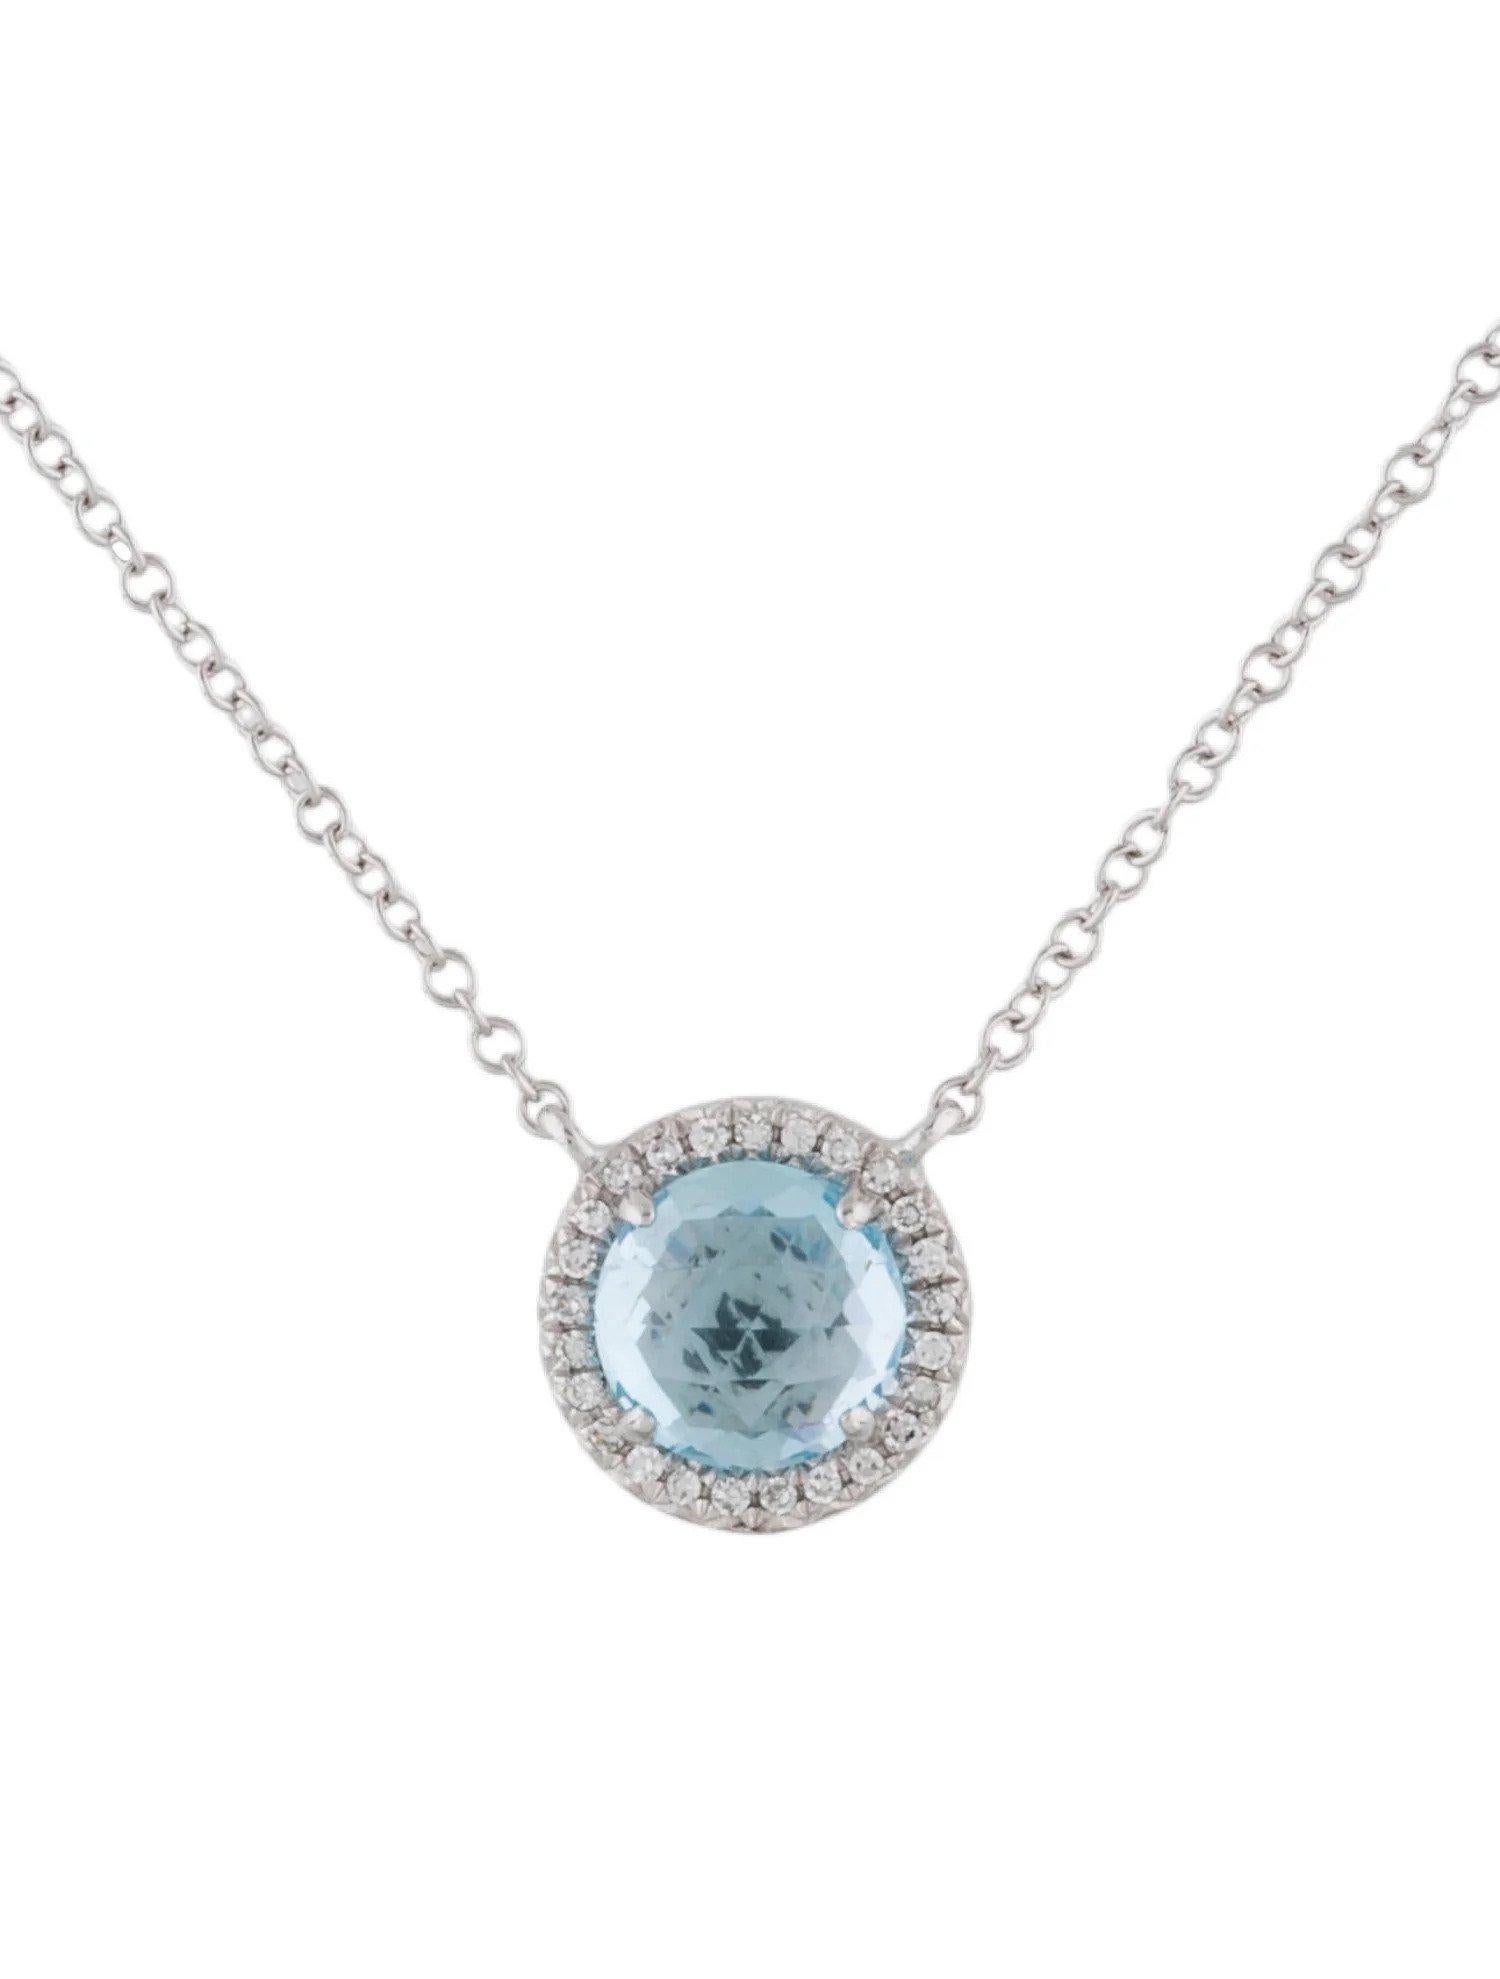 Ce pendentif en topaze bleue et diamant est un accessoire étonnant et intemporel qui peut ajouter une touche de glamour et de sophistication à n'importe quelle tenue. 

Ce pendentif présente une topaze bleue ronde de 1,41 carat, avec un halo de